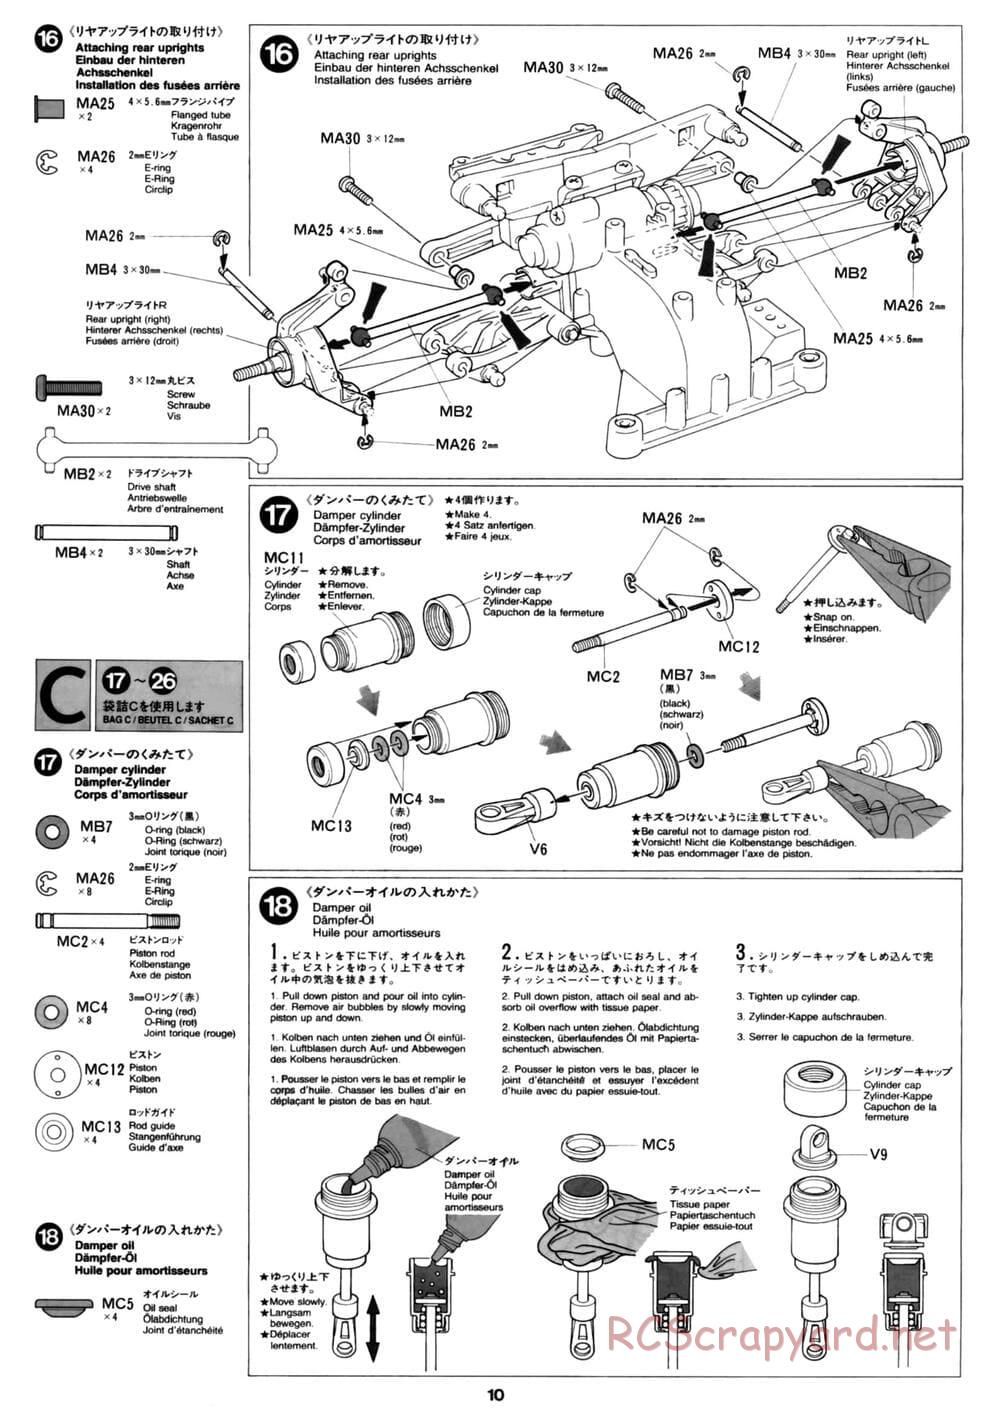 Tamiya - David Jun TA03F Pro Chassis - Manual - Page 10